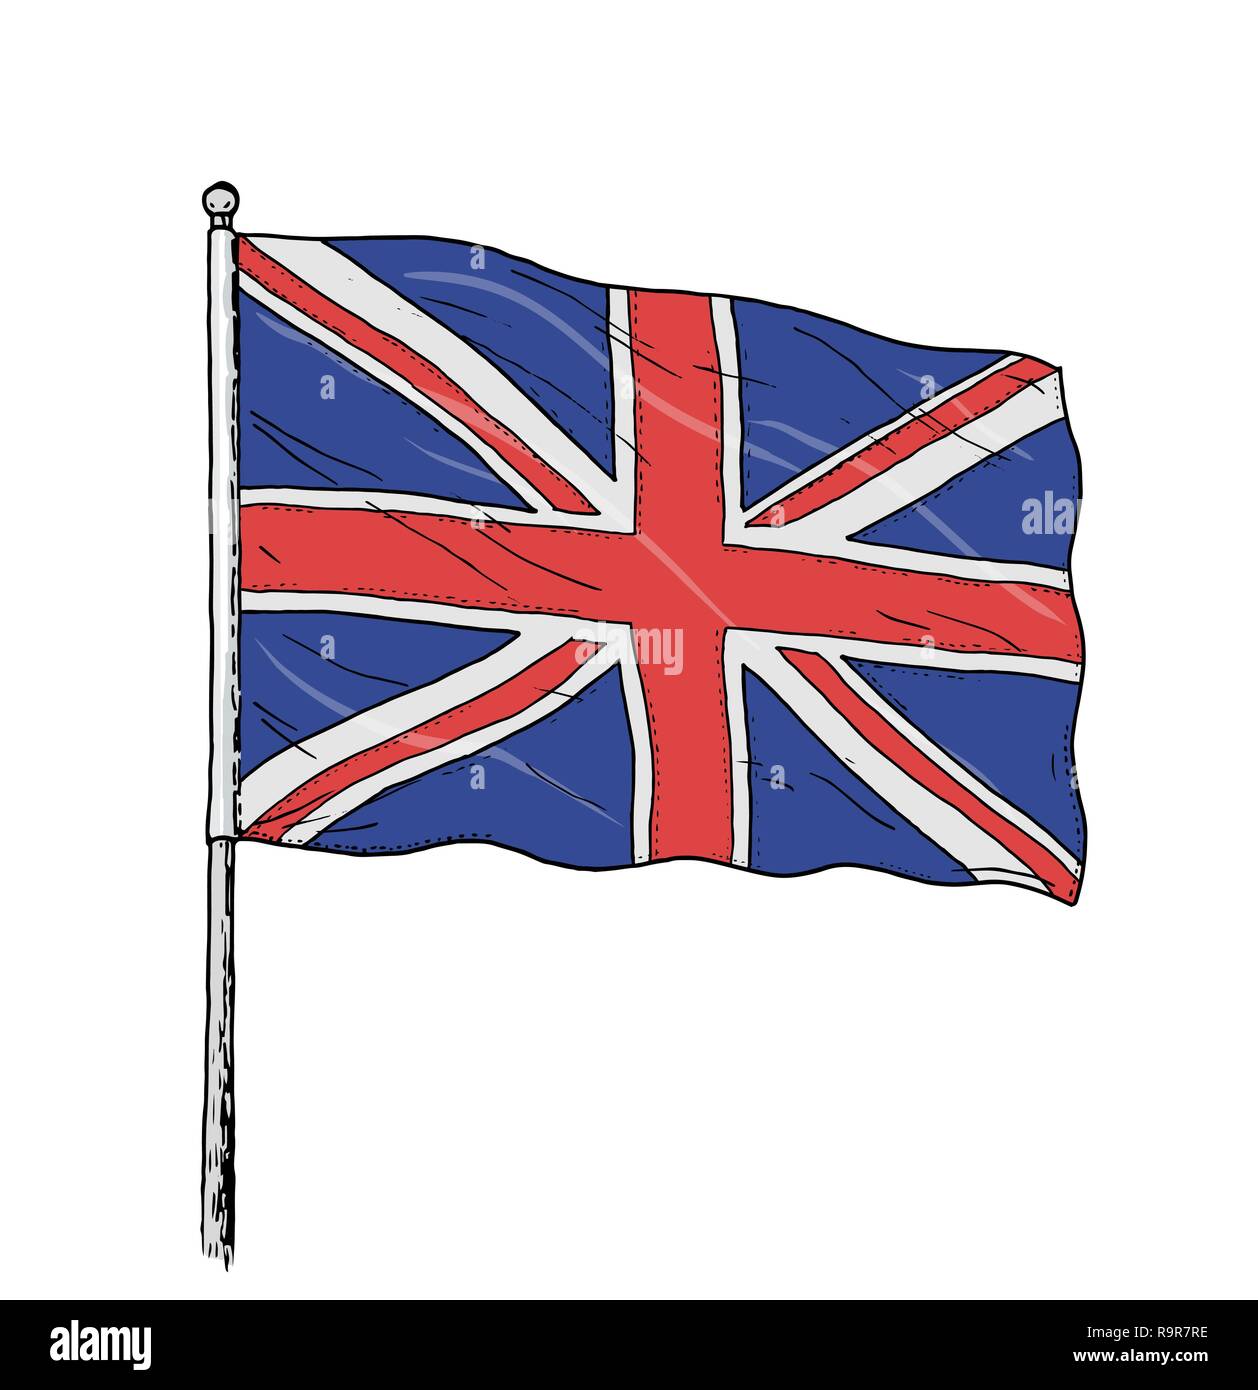 Pavillon du Royaume-Uni - dessin couleur vintage comme illustration du drapeau britannique - Union Jack. Contour sur fond blanc. Illustration de Vecteur